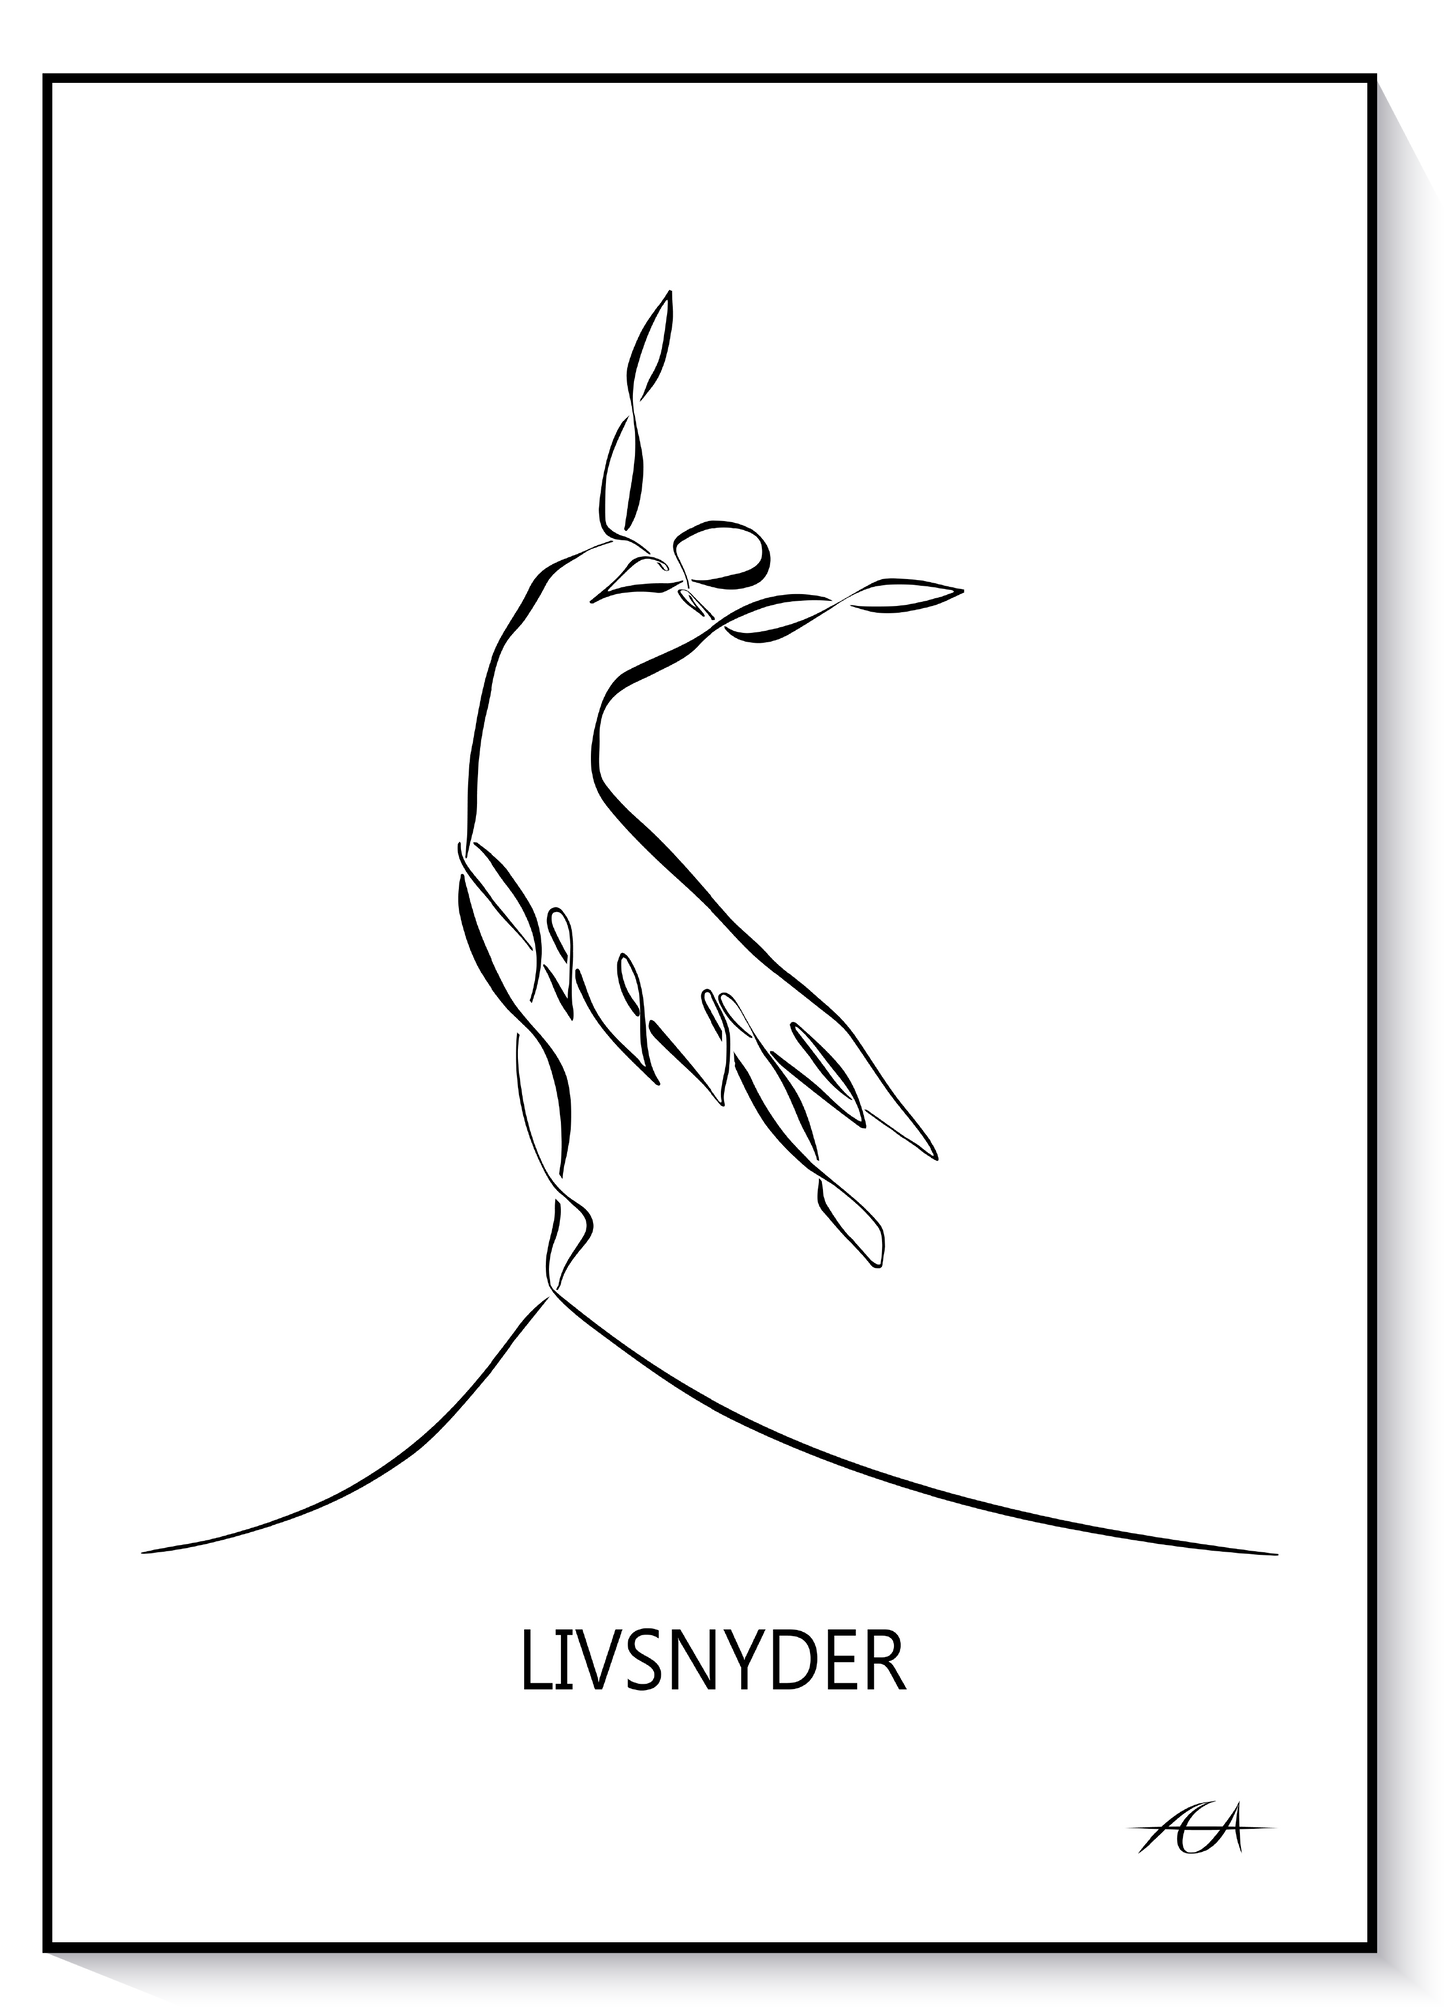 Livsnyder - AEArt